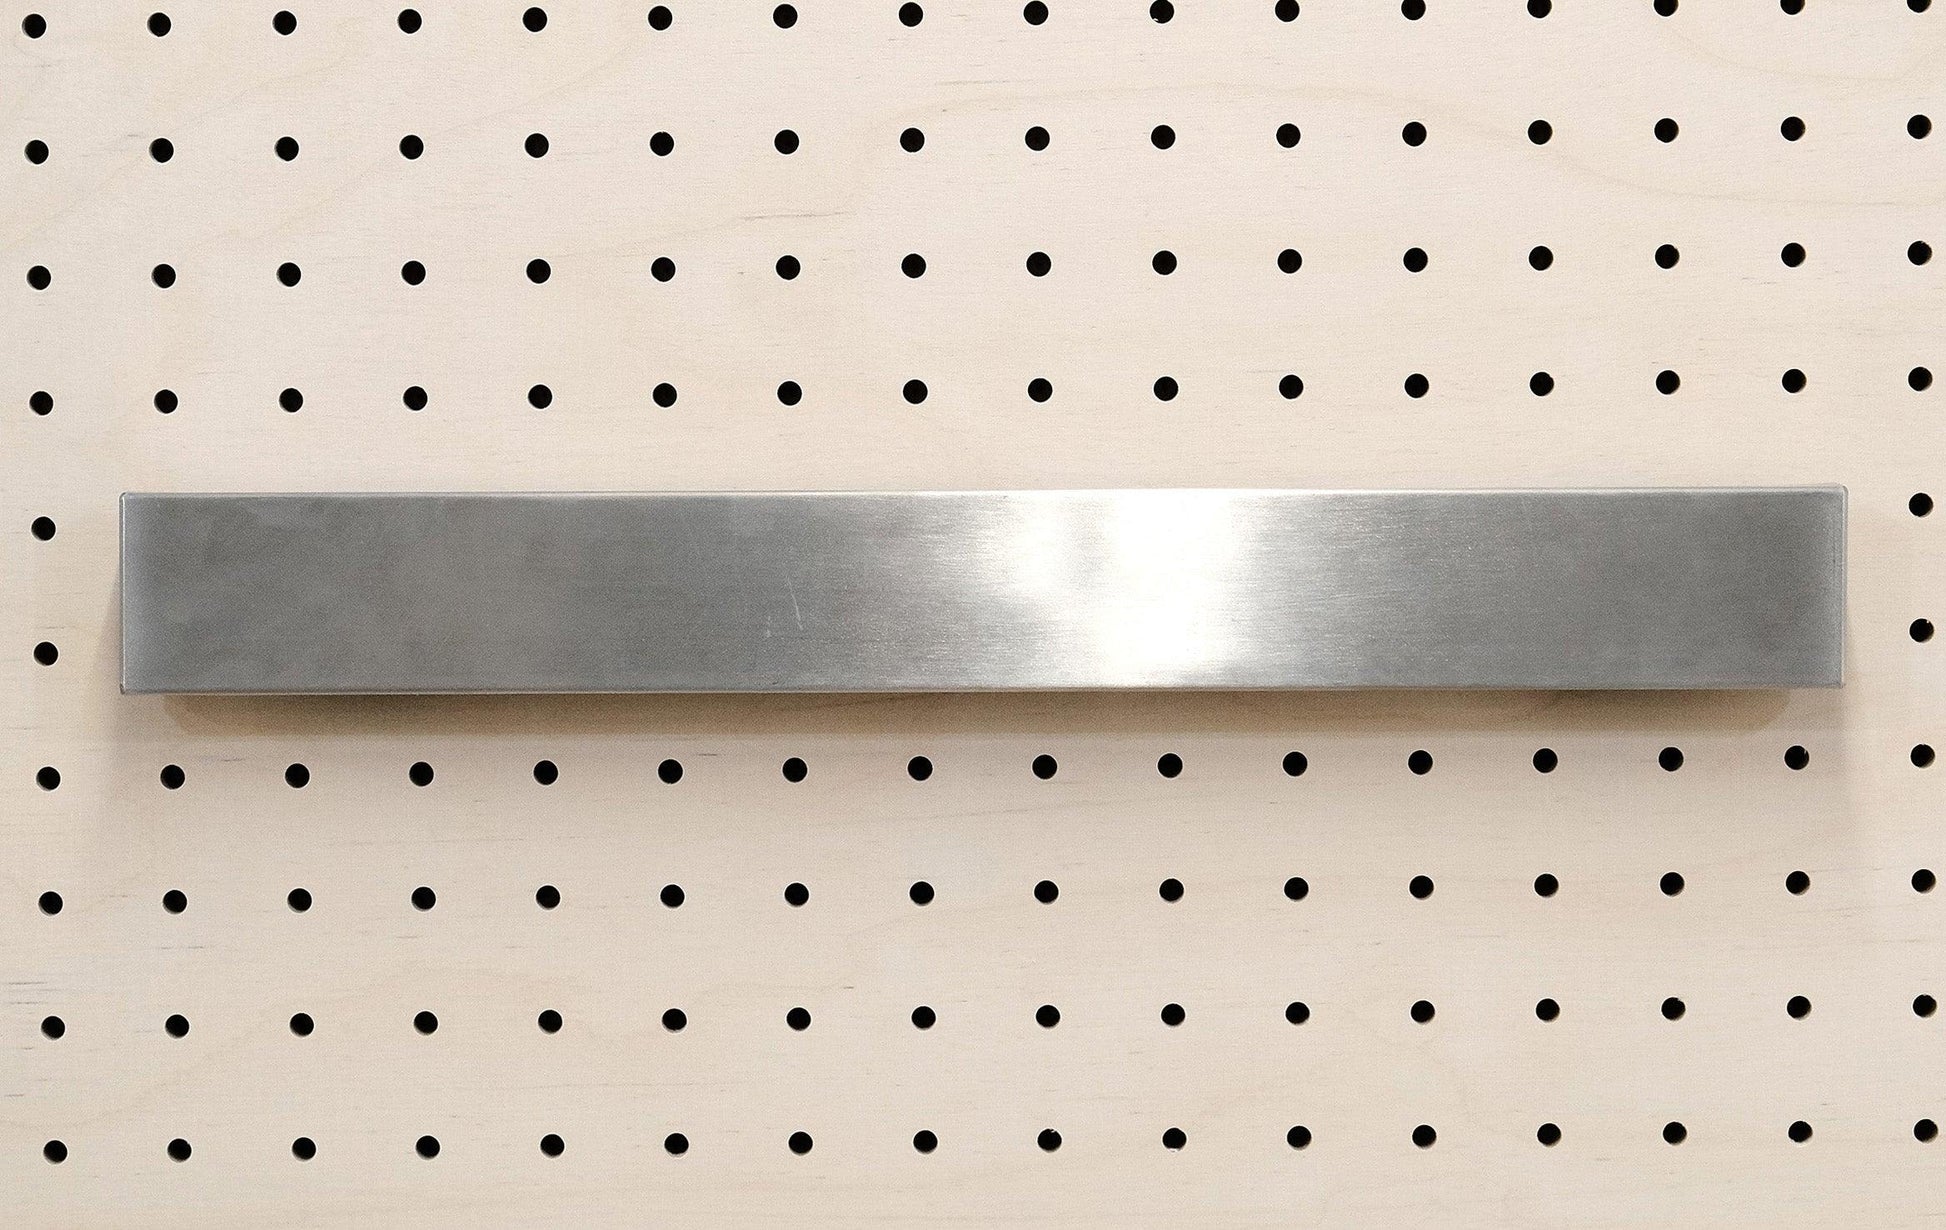 Quark magnetic knife holder - Quark